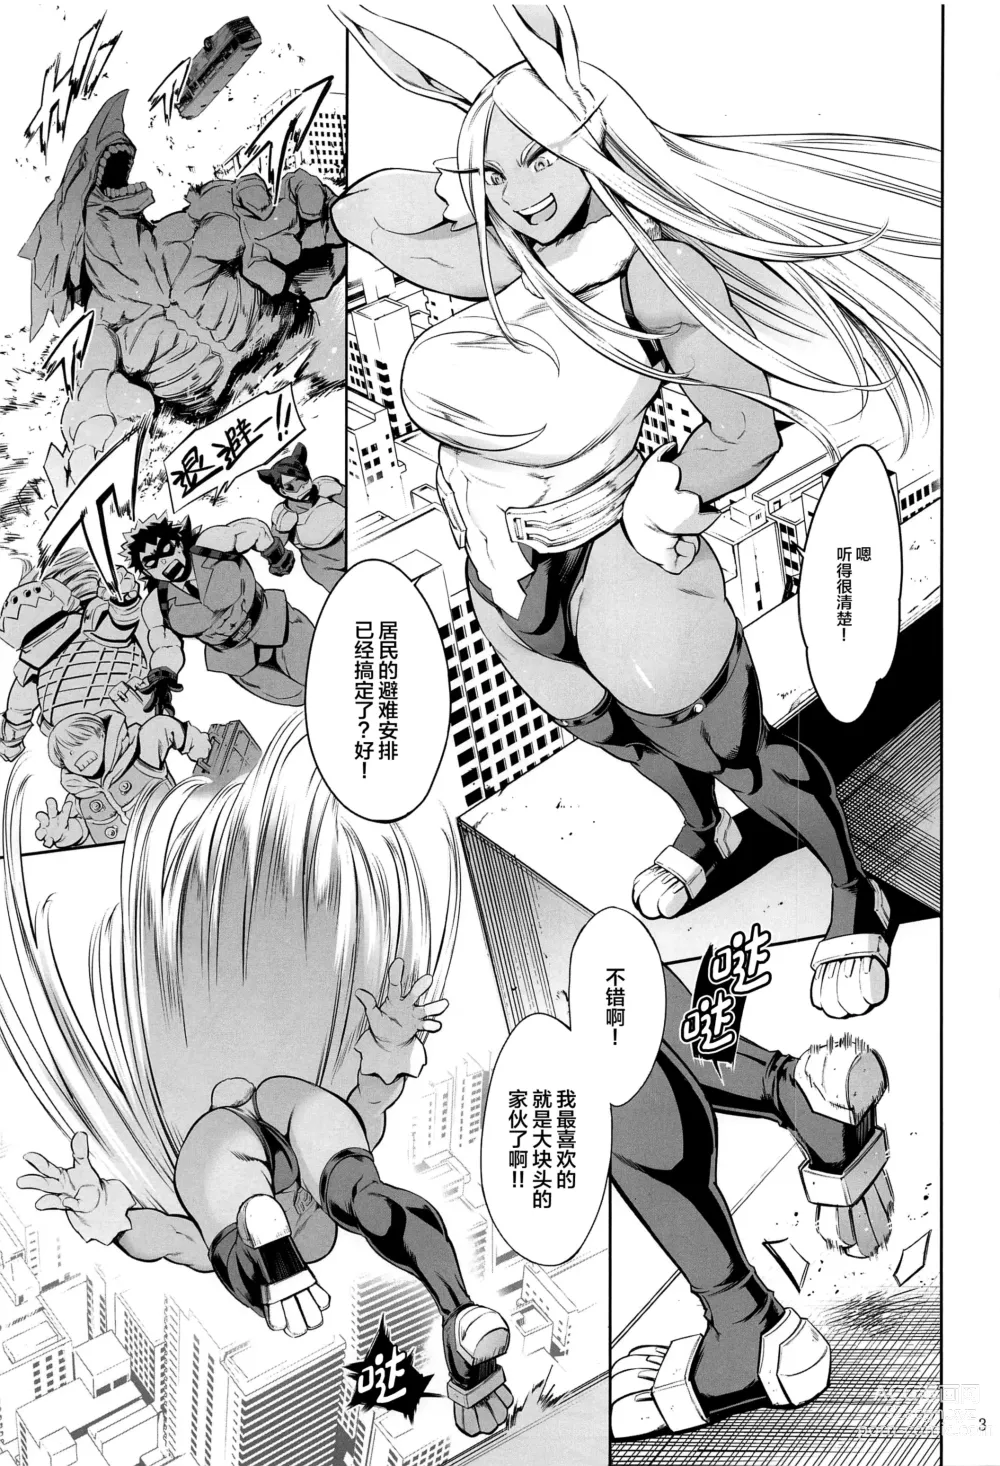 Page 2 of doujinshi Goshimei wa Usagi desu ka?